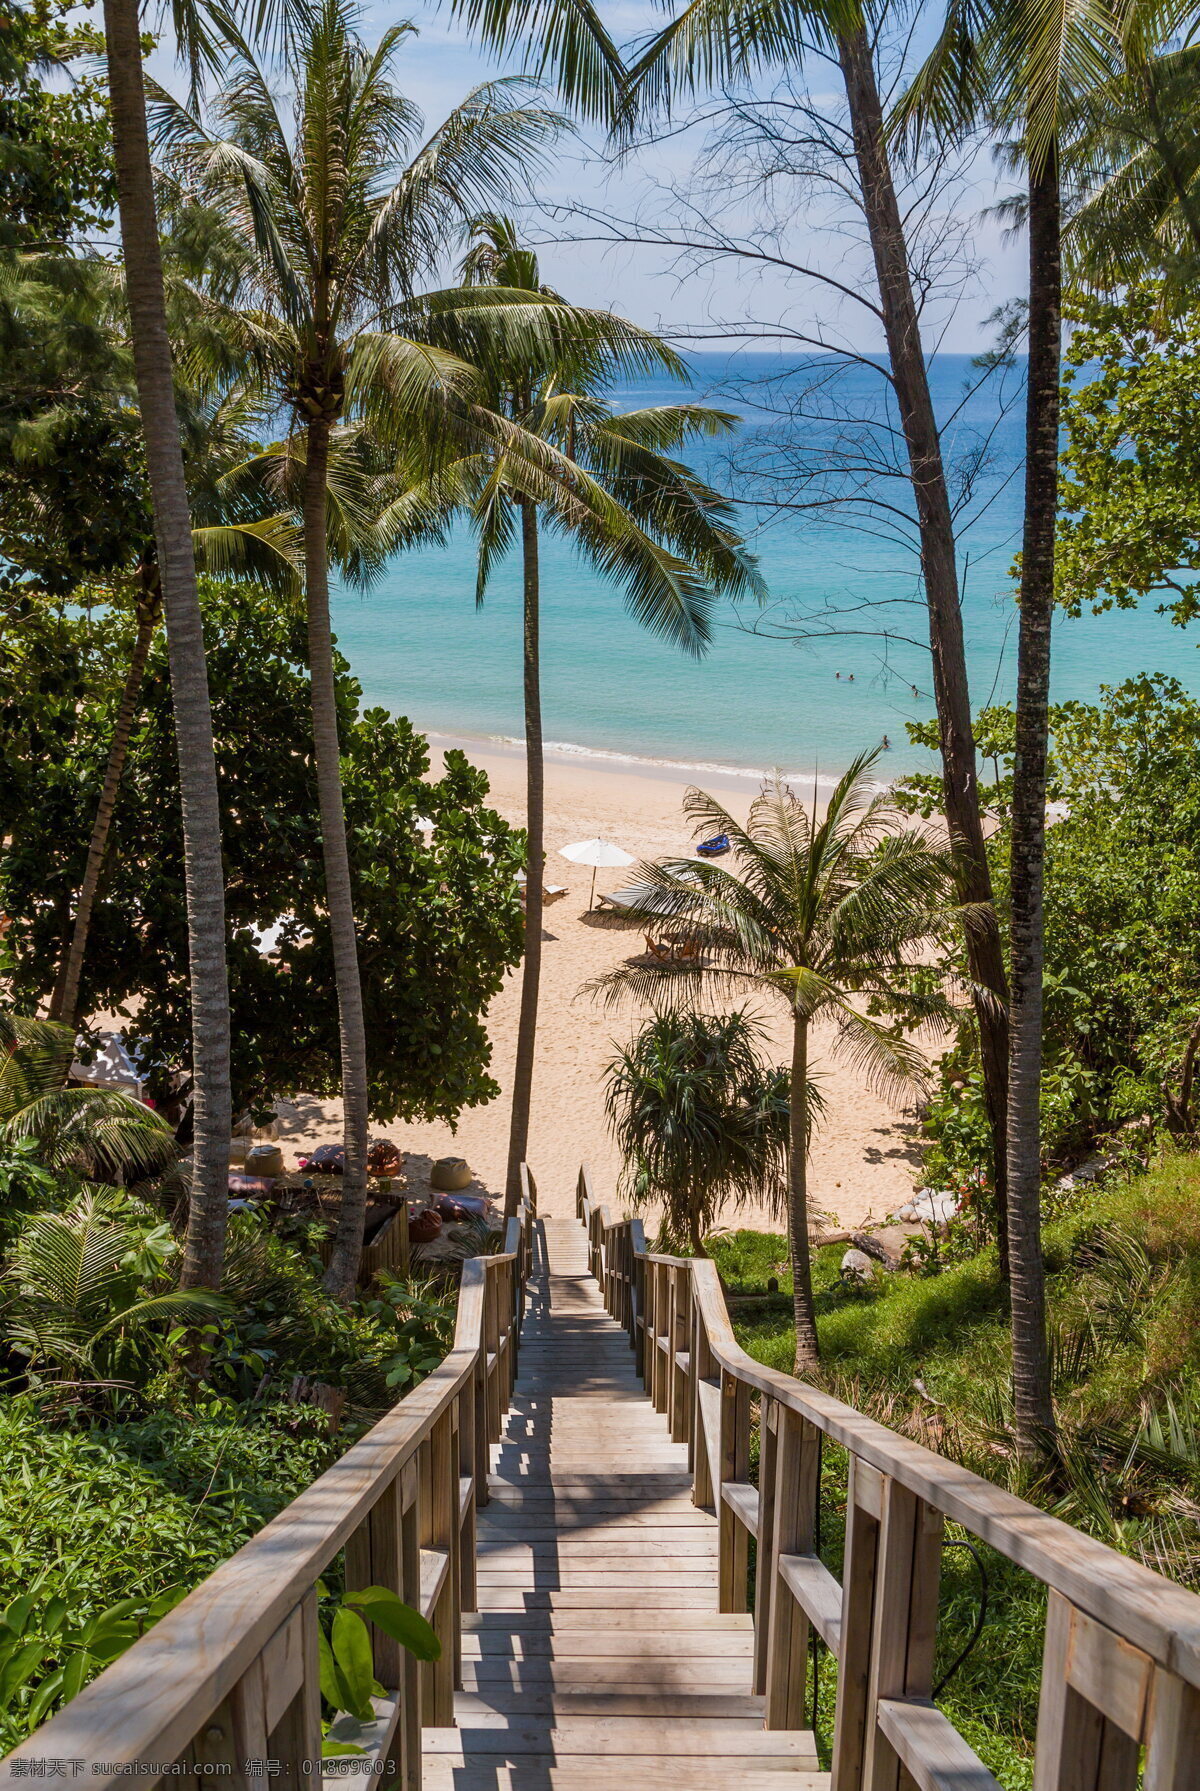 夏威夷风景 夏威夷 热带植物 绿色 植物 植被 木栈道 沙滩 海边 遮阳伞 大海 自然风光 风景图 自然景观 自然风景